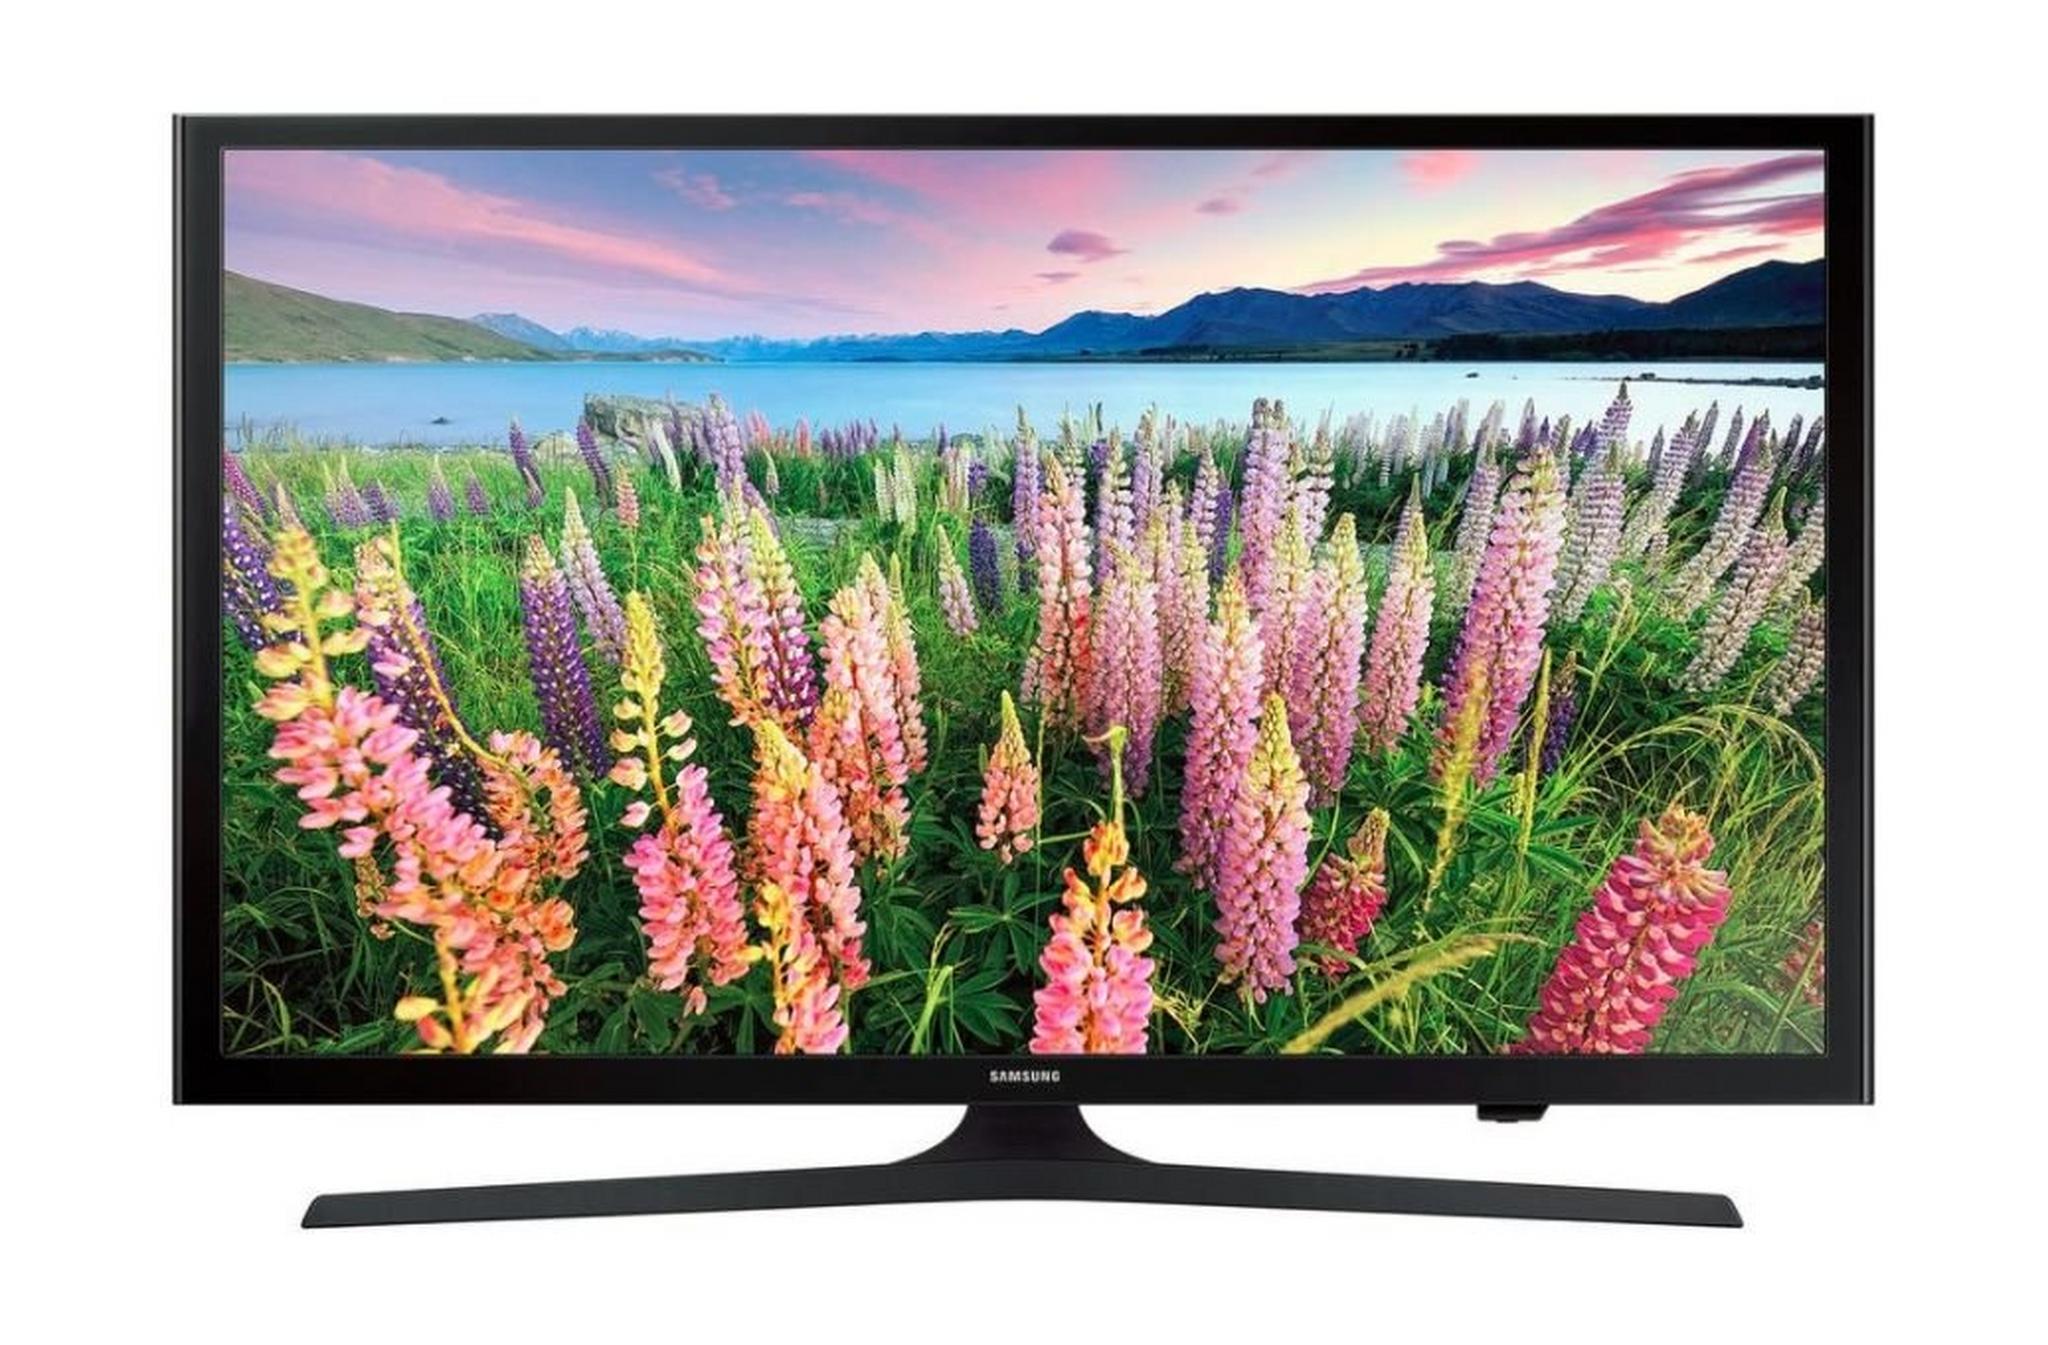 Samsung 49 inch Full HD Smart LED TV - UA49J5200